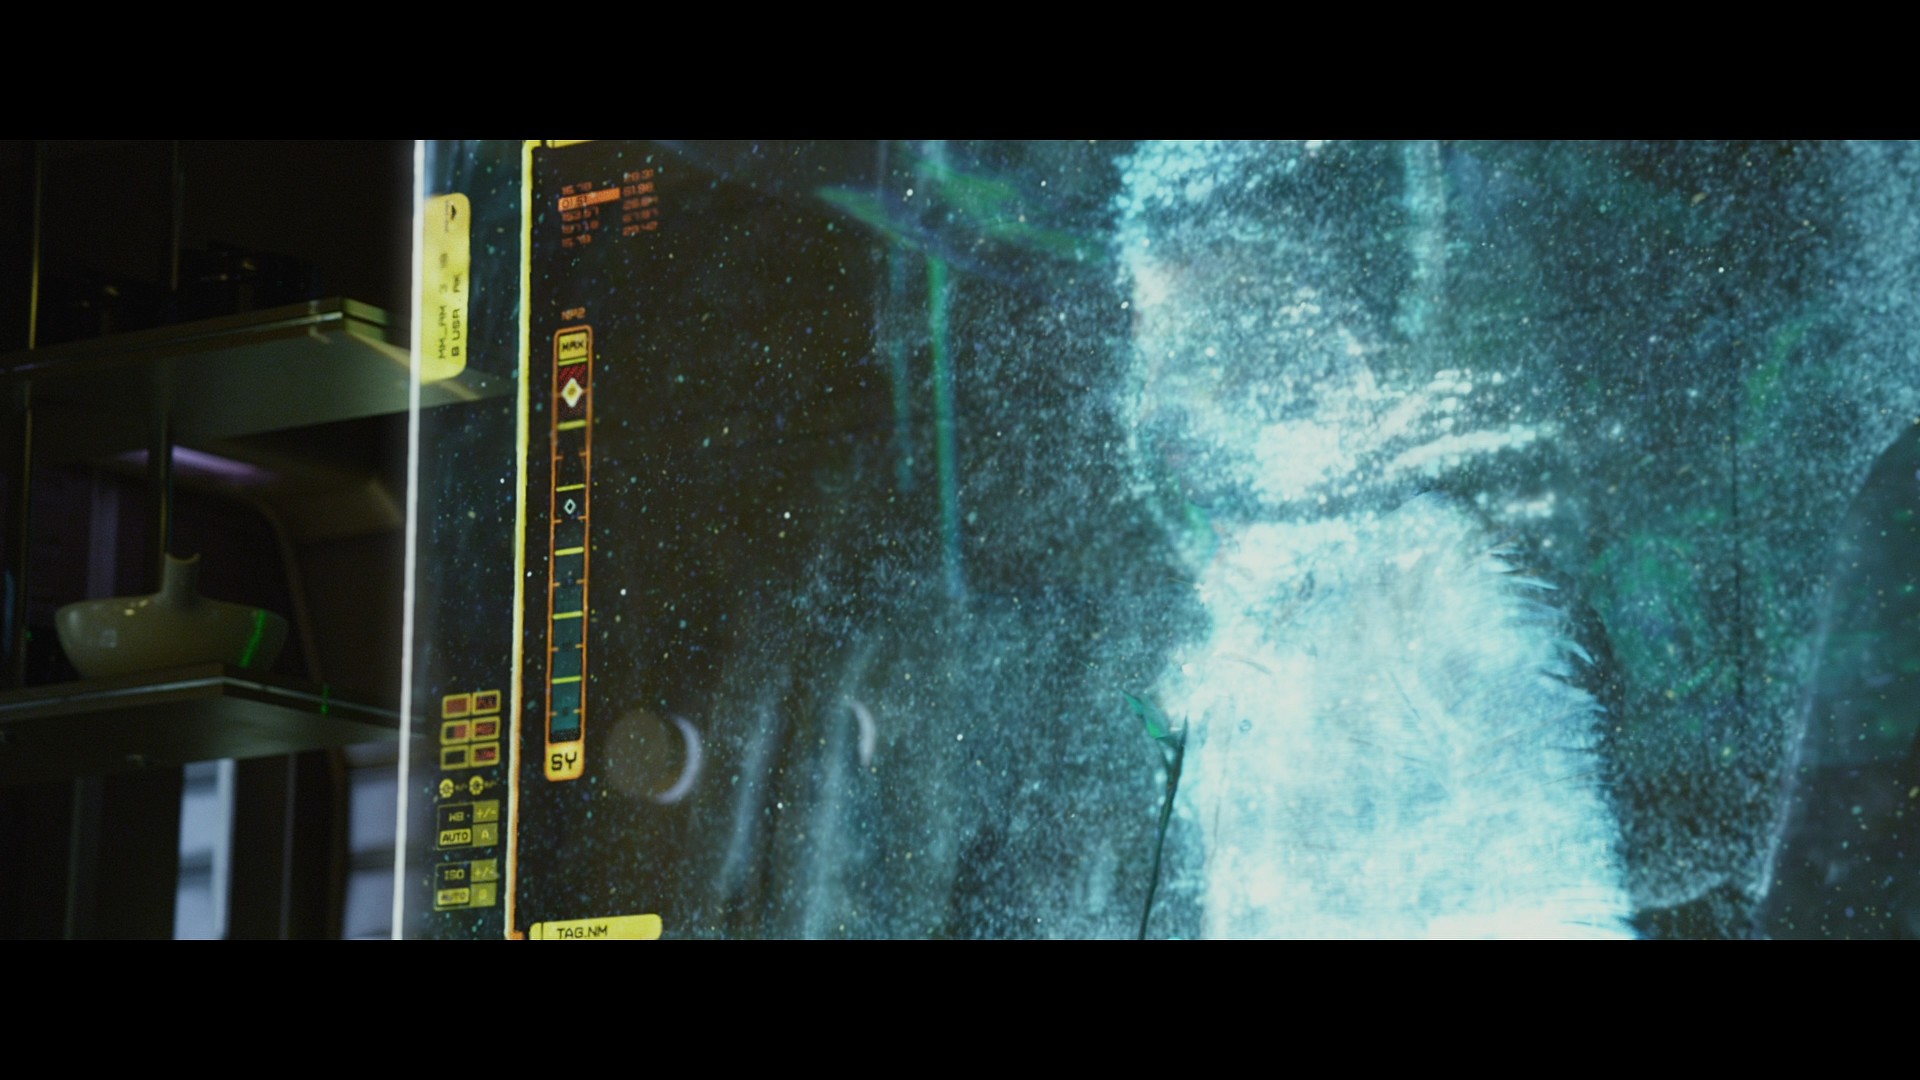 [普罗米修斯].Prometheus.2012.3D.GER.BluRay.1080p.AVC.DTS-HD.MA.7.1-BluHD    45.95G-8.jpg